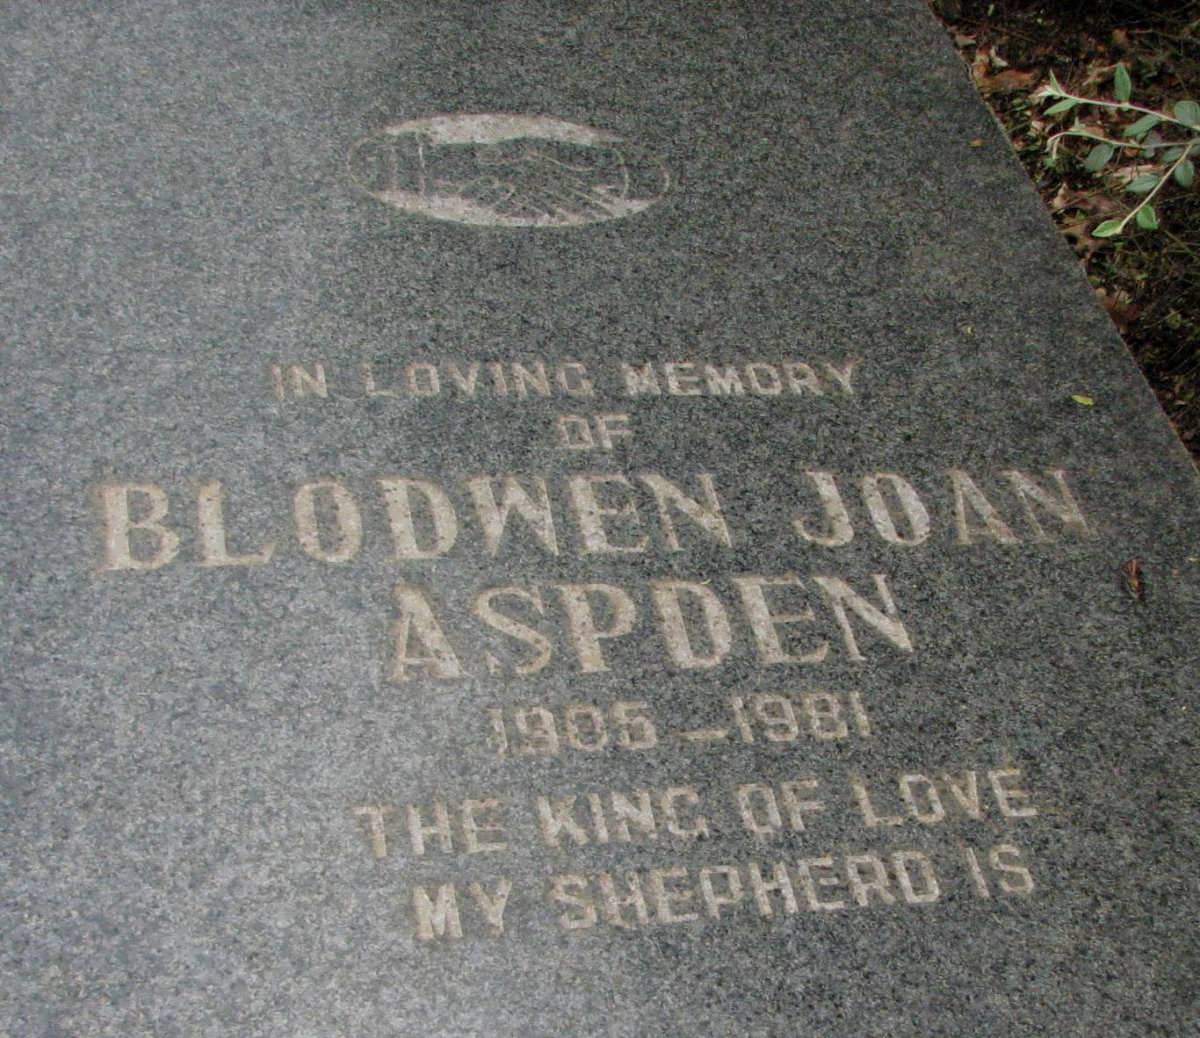 ASPDEN Blodwen Joan 1905-1981